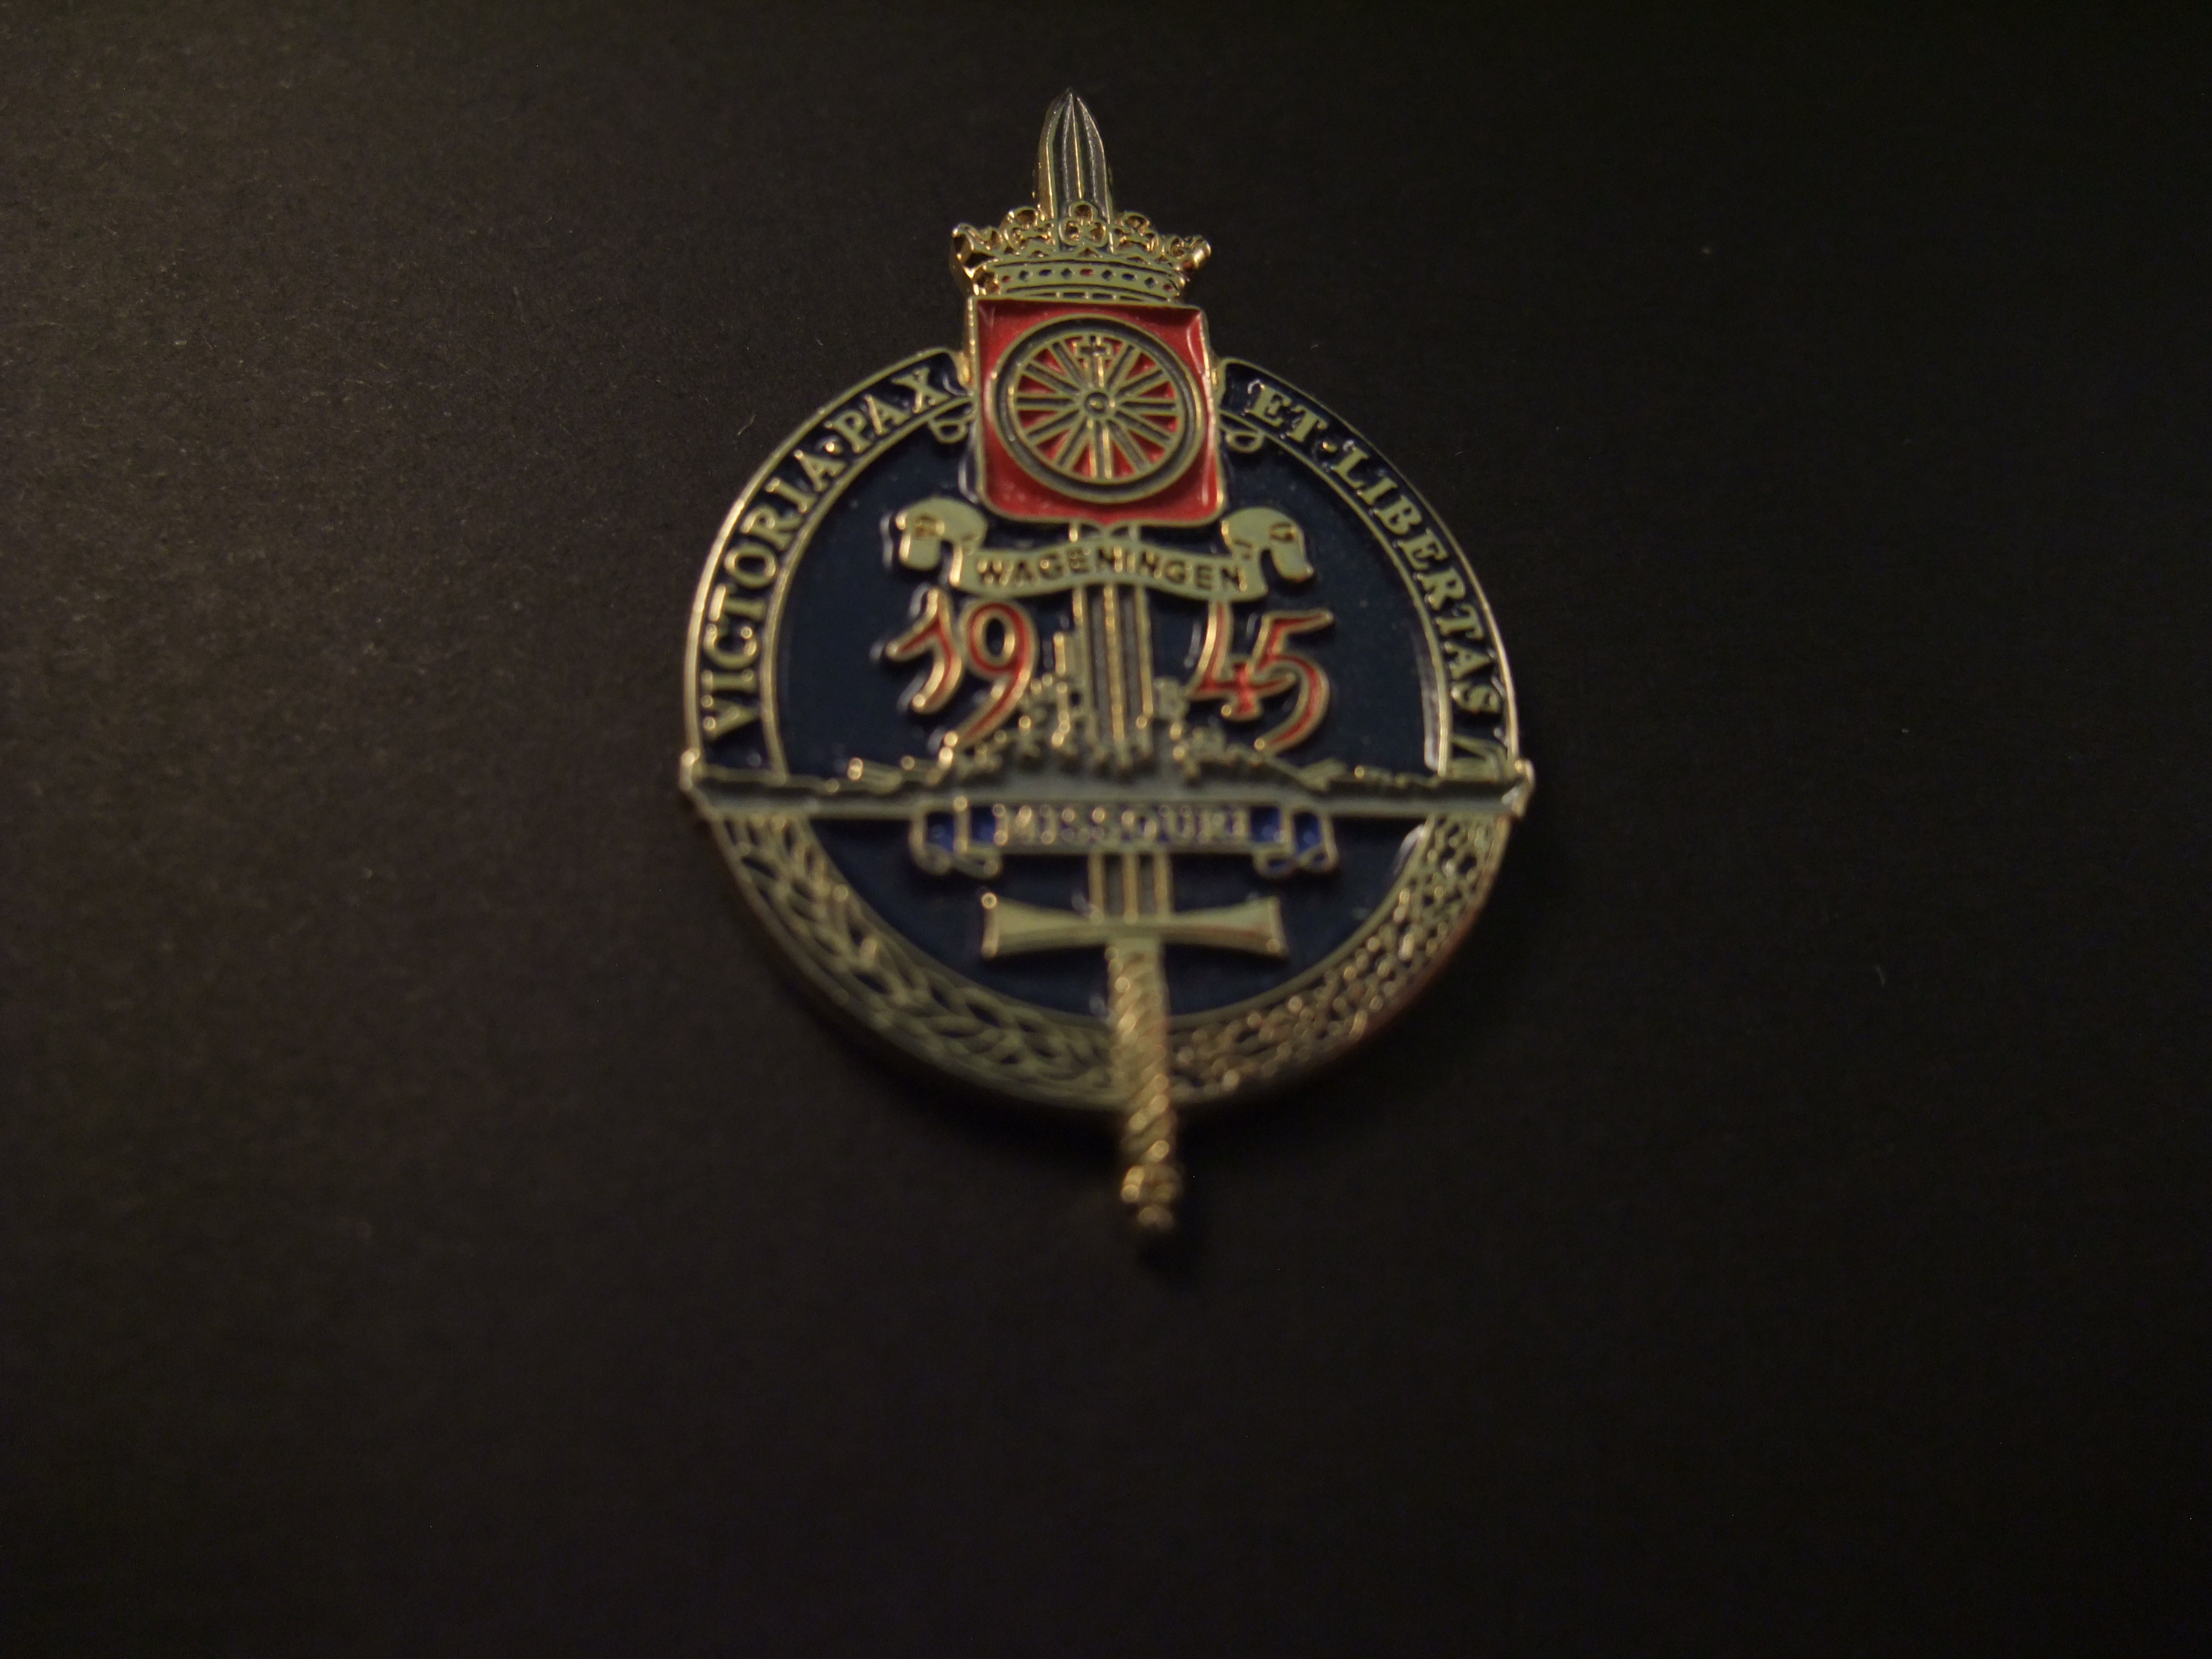 Victoria Pax et, Libertas draagspeld uitgereikt door het Nationale Comite herdenking Capitulatie 1945 aan het Zeekadettenkorps bij het bevrijdings defile te Wageningen